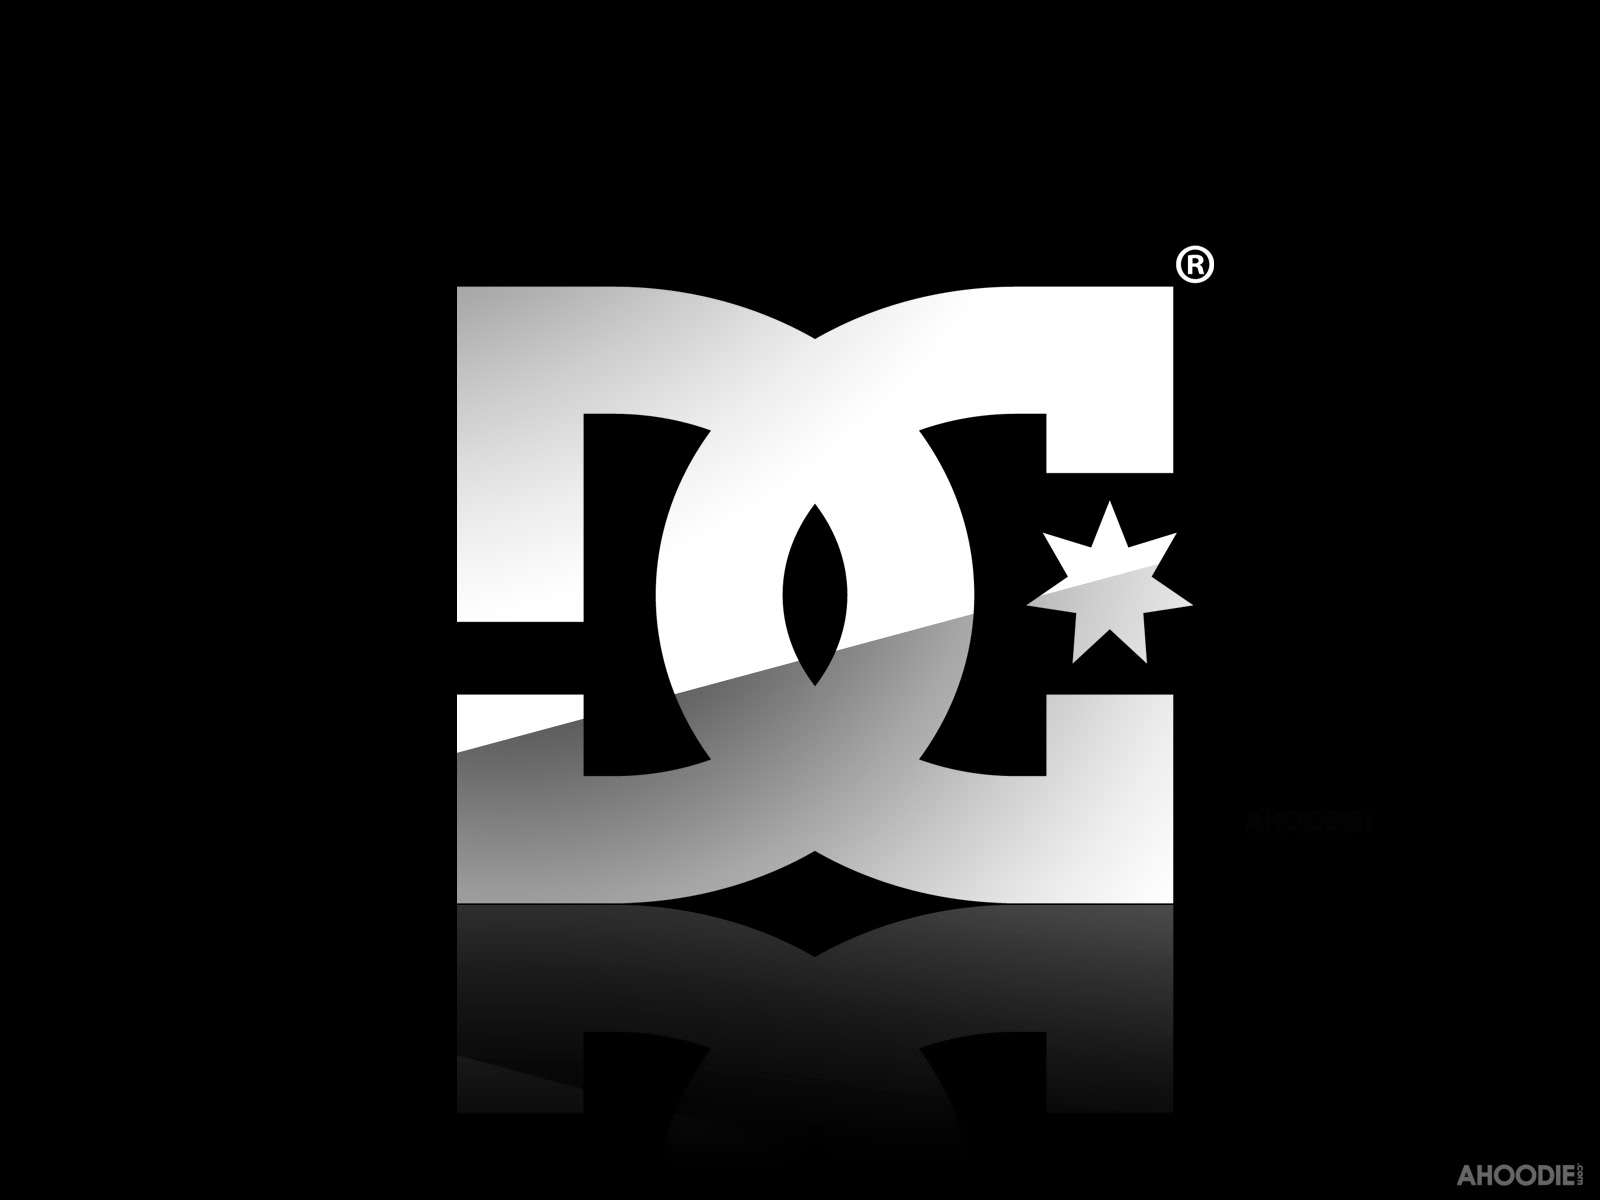 dc logo wallpaper,text,schriftart,schwarz und weiß,grafikdesign,design